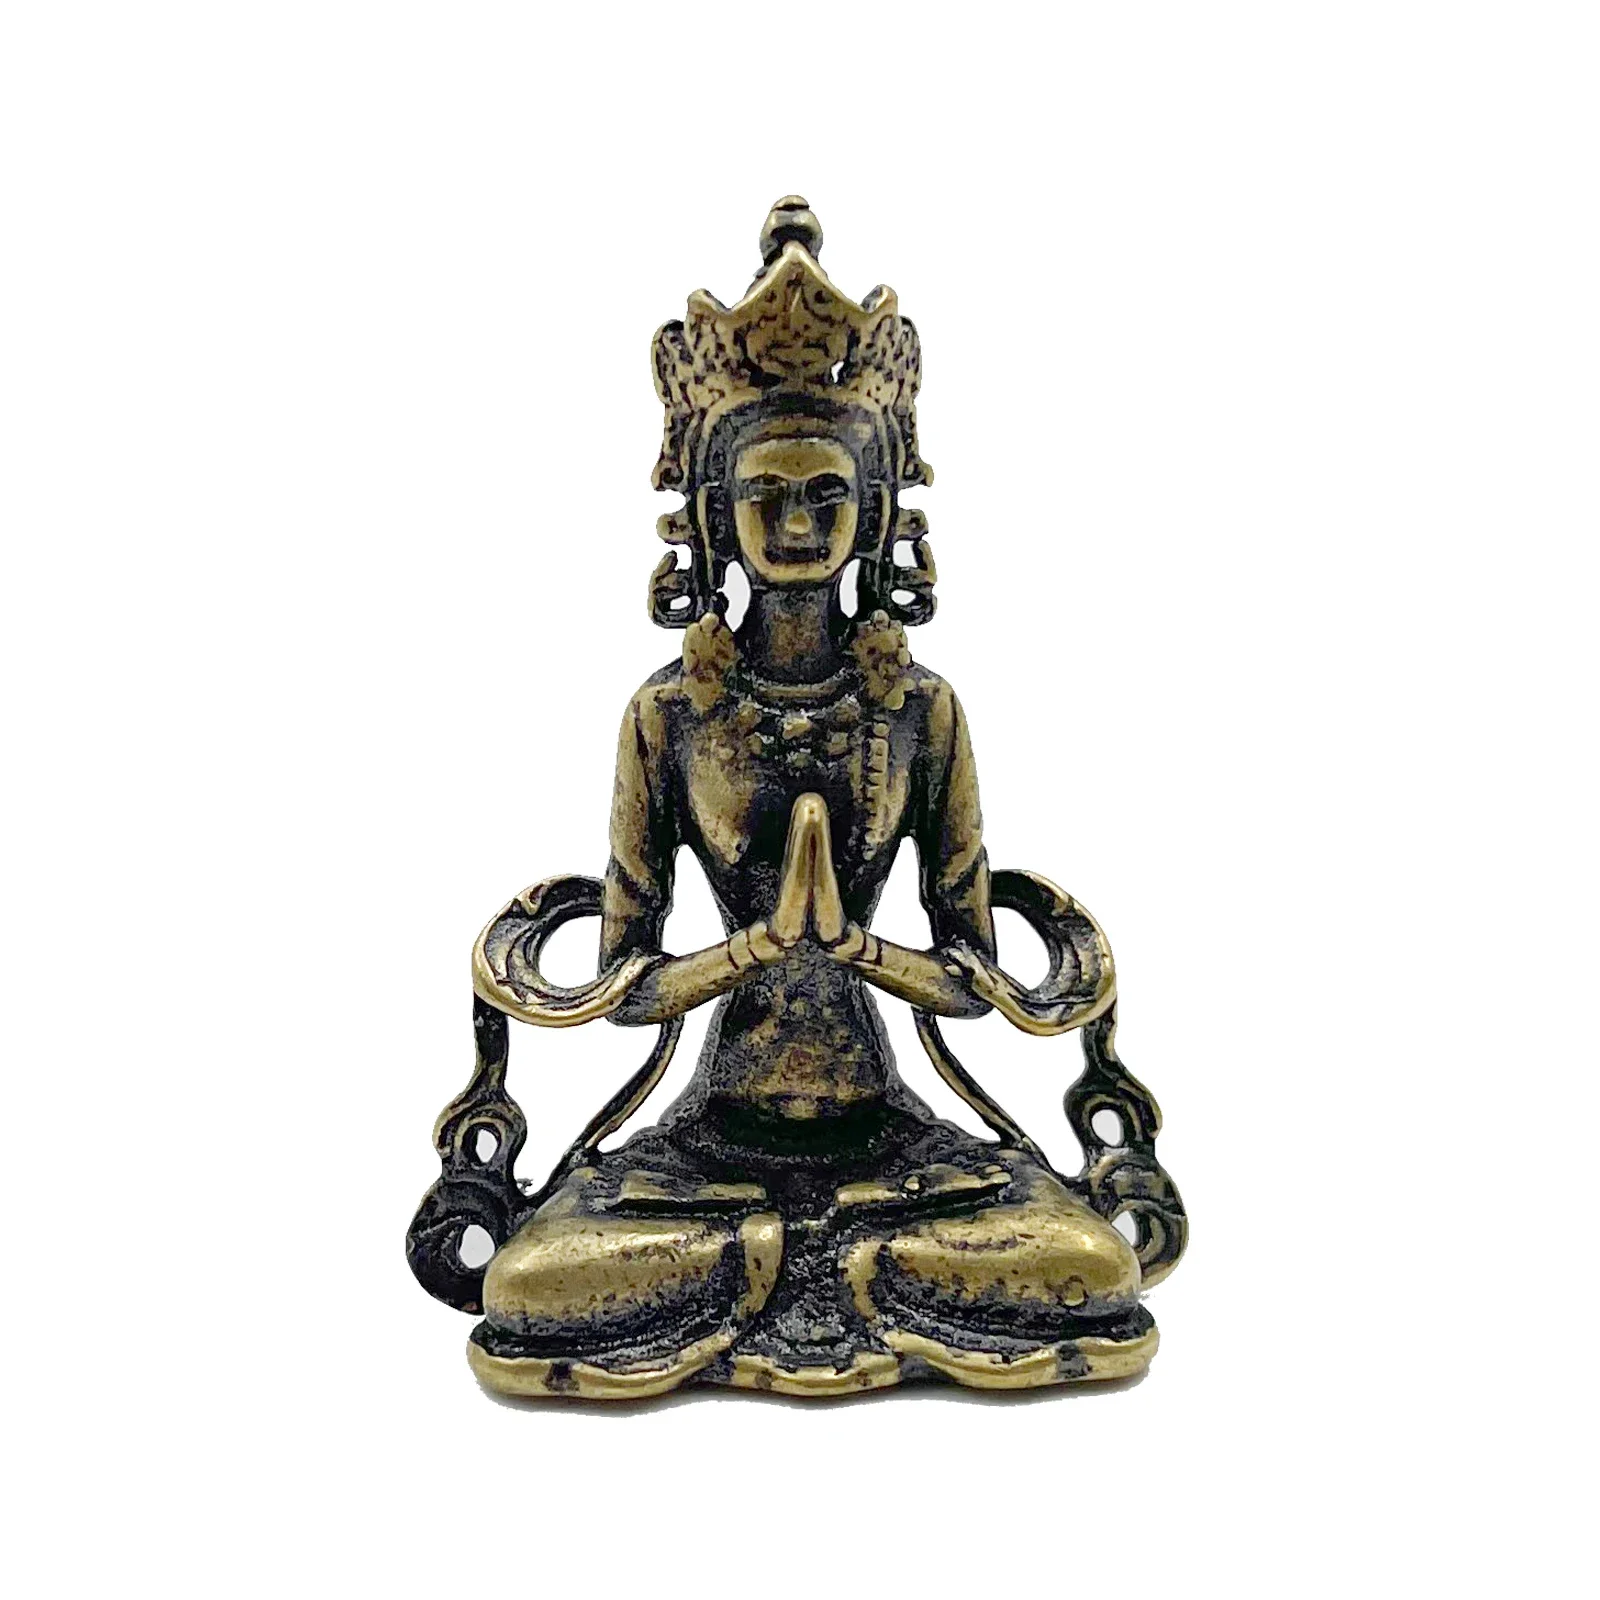 1pc Retro Messing Meditieren Zen Buddhismus Haushalt Buddha ornament Wohnzimmer Handgemachte Dekoration Kupfer Statue Tee Haus Ornament